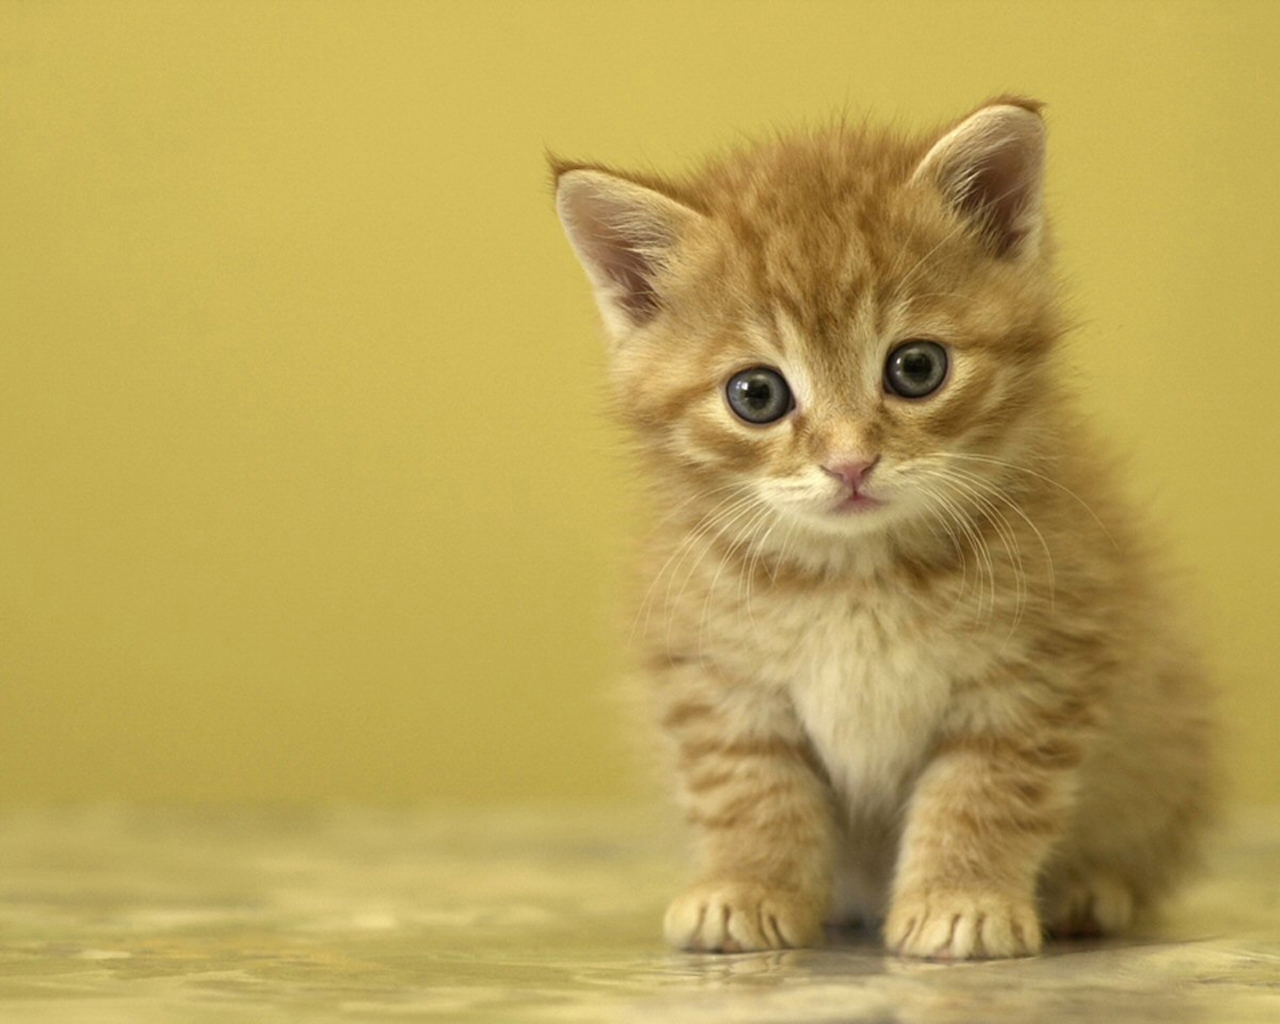 Little Cute Kitten - HD Wallpaper 